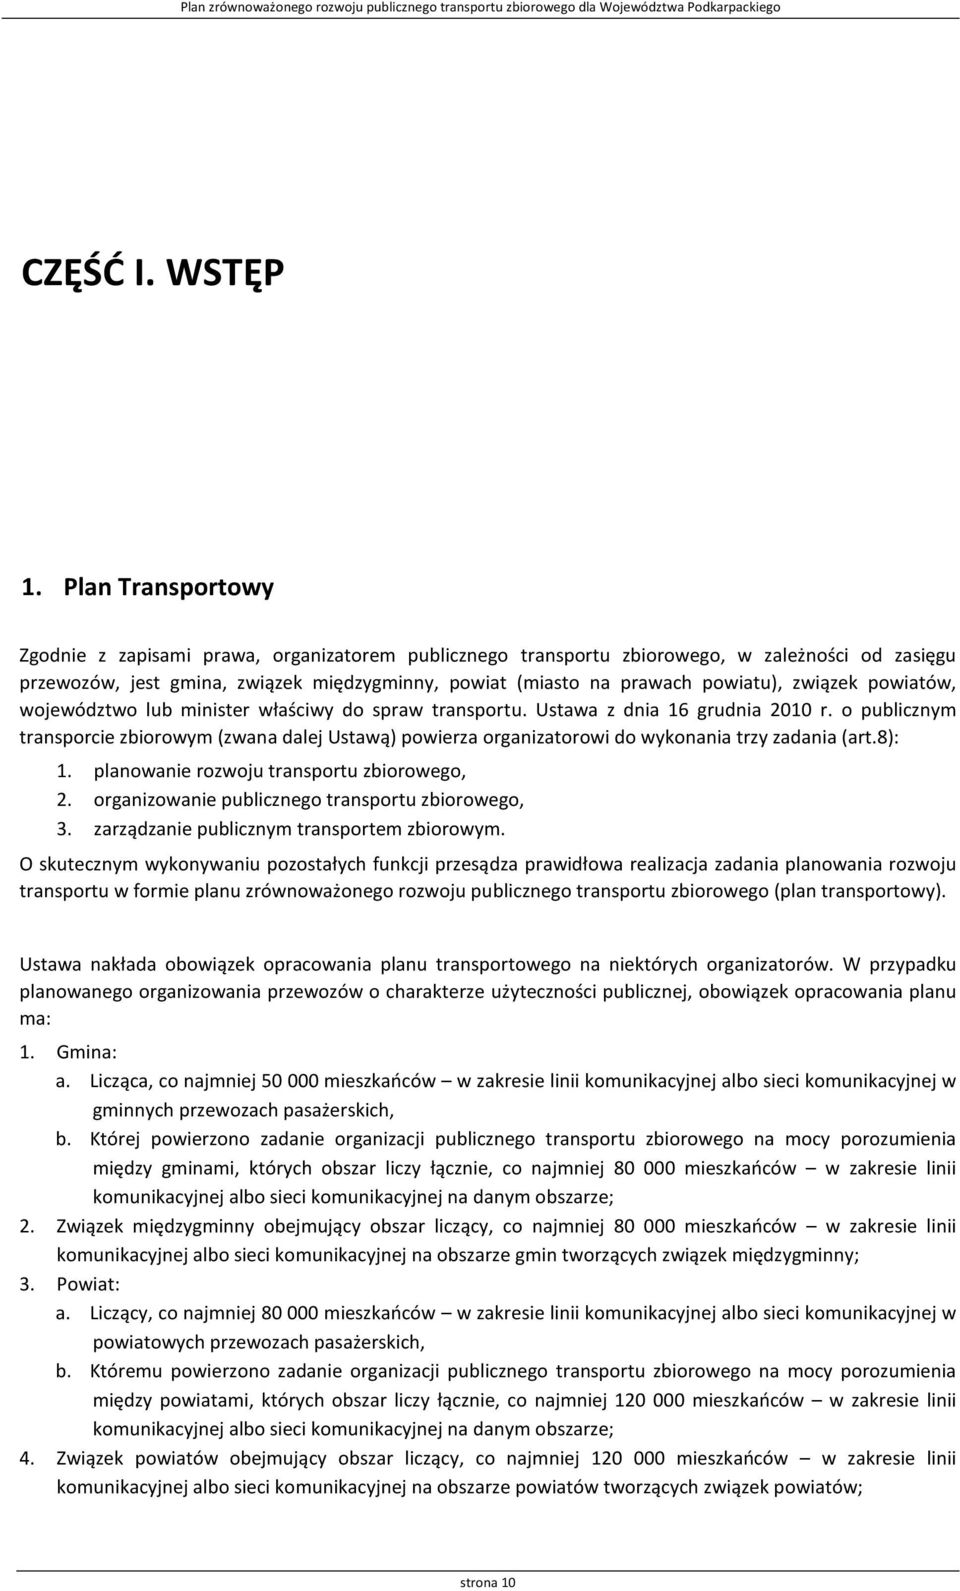 związek powiatów, województwo lub minister właściwy do spraw transportu. Ustawa z dnia 16 grudnia 2010 r.